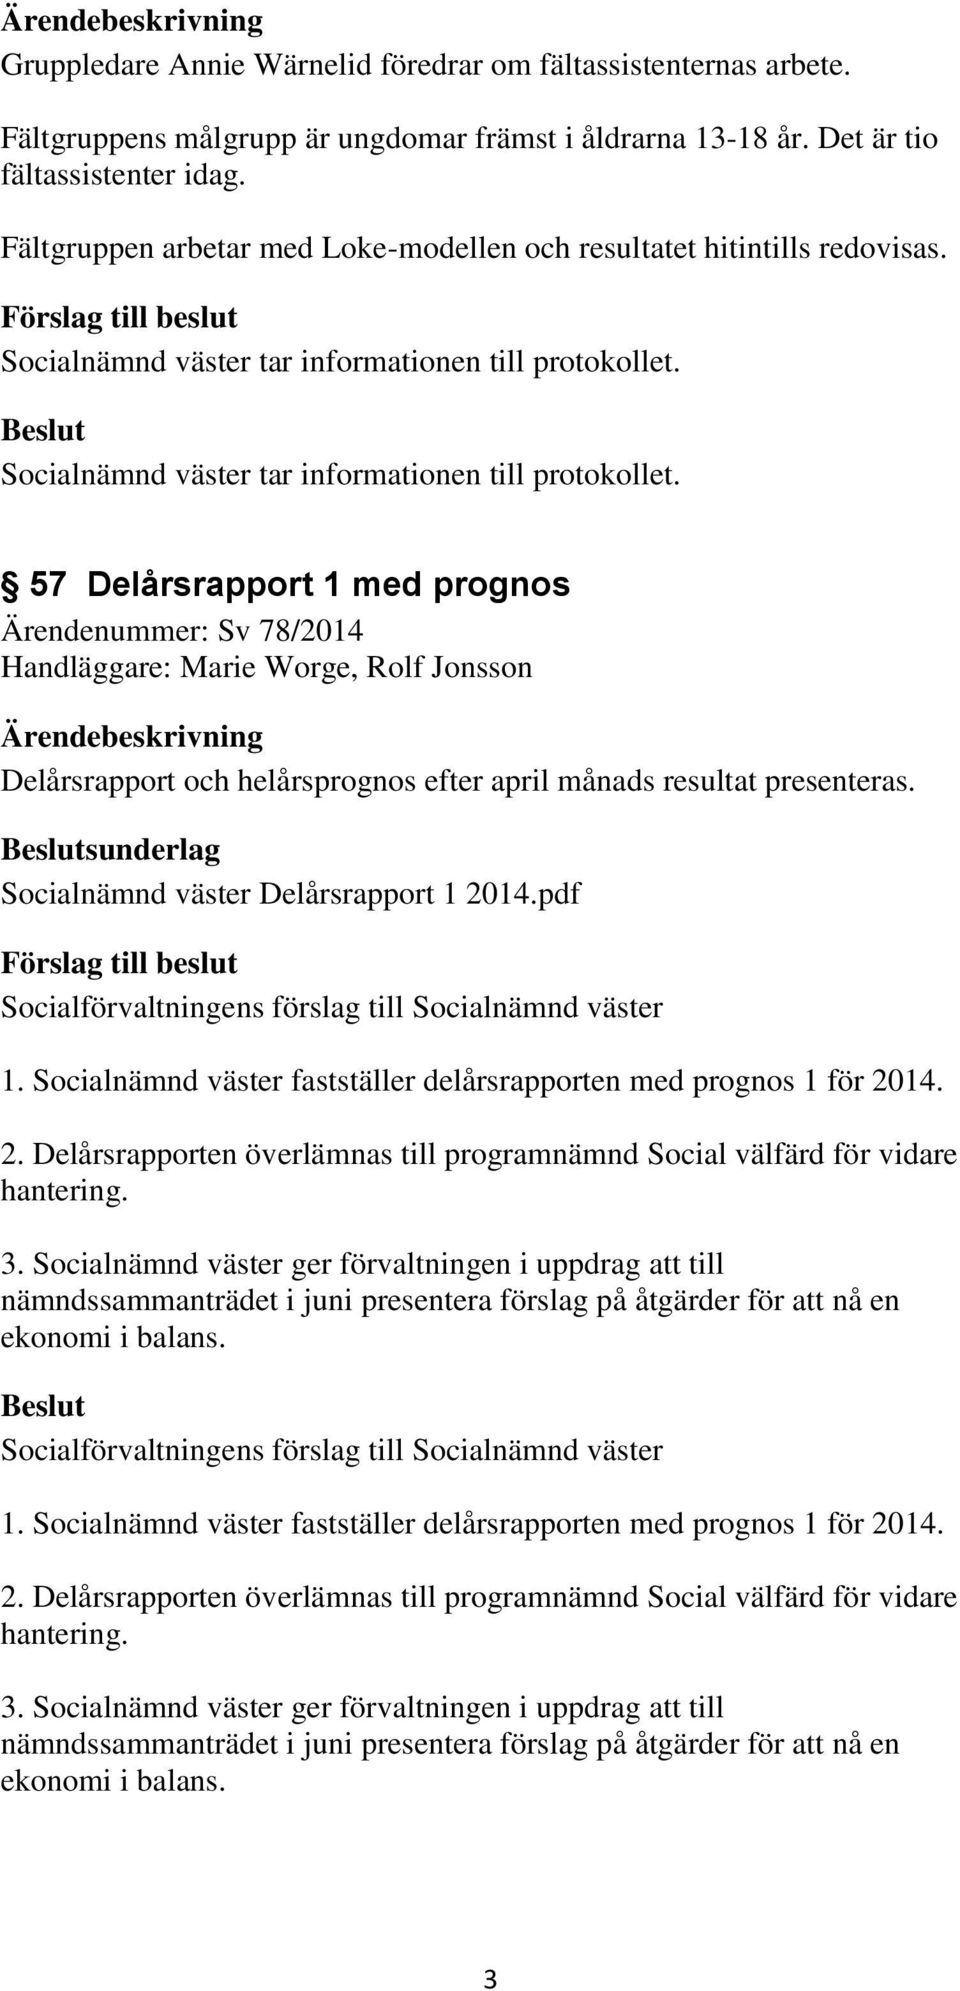 57 Delårsrapport 1 med prognos Ärendenummer: Sv 78/2014 Handläggare: Marie Worge, Rolf Jonsson Delårsrapport och helårsprognos efter april månads resultat presenteras.